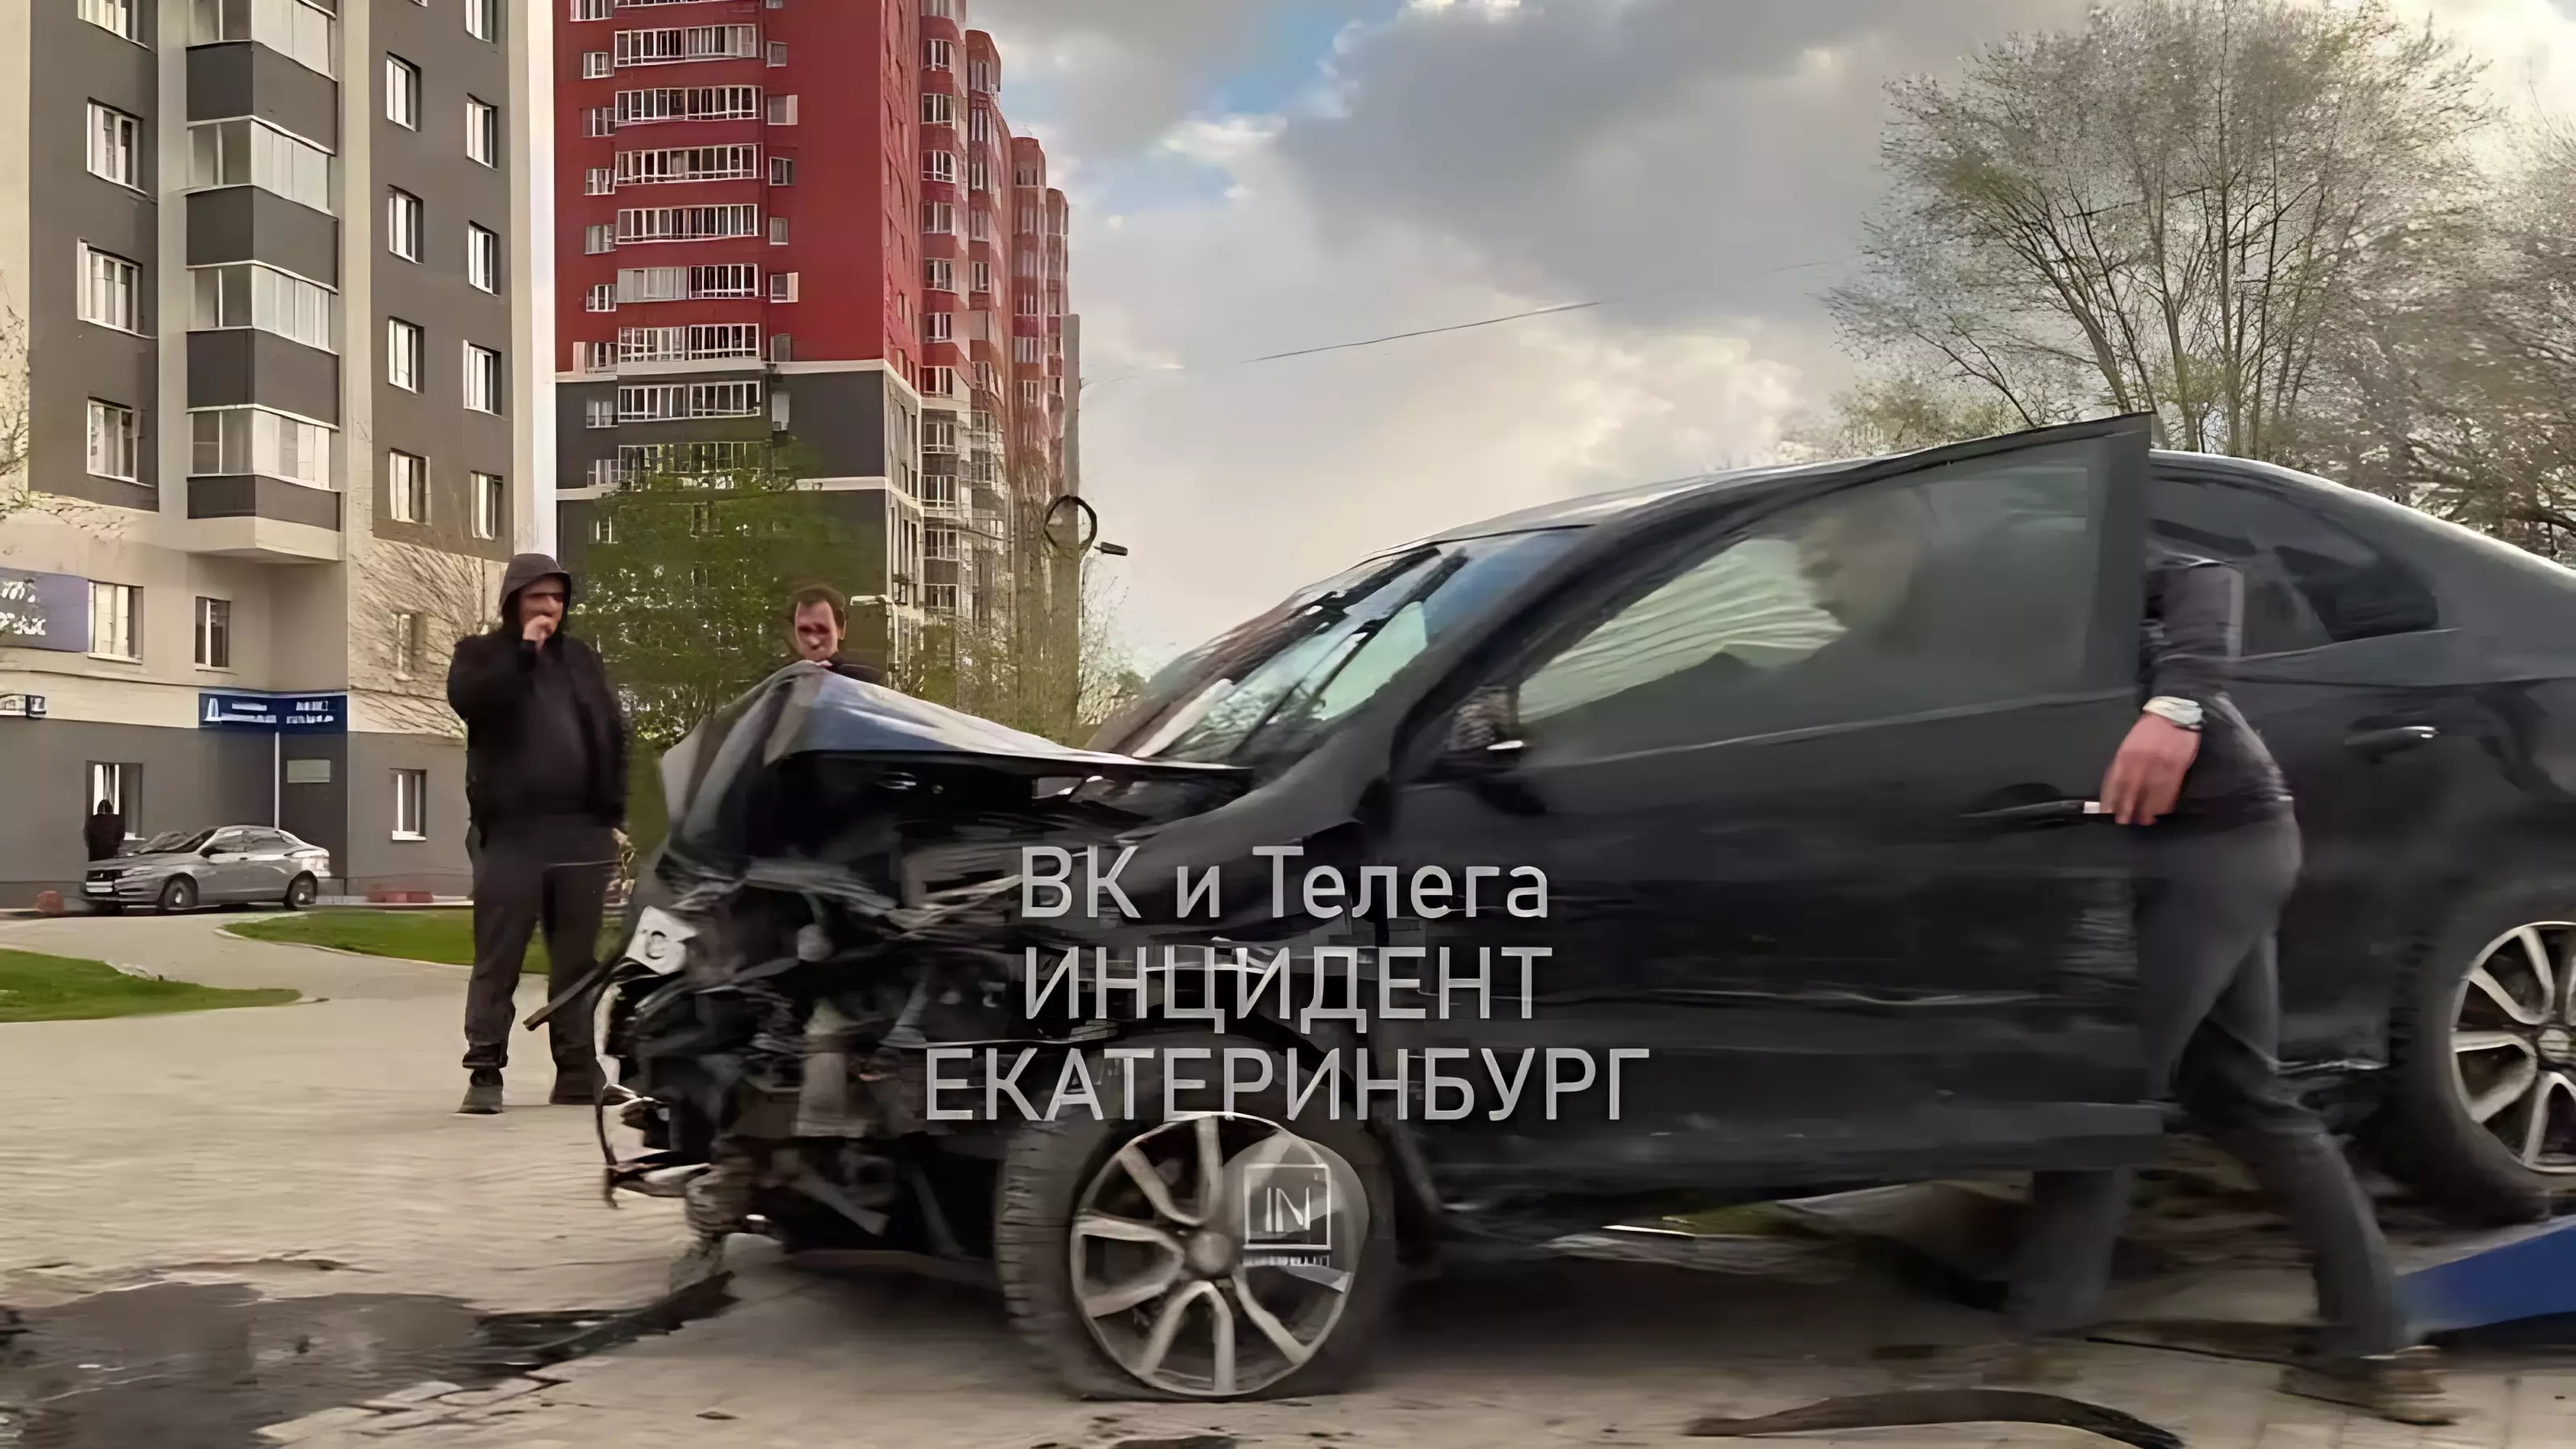 Два человека пострадали в ДТП на перекрестке в Екатеринбурге